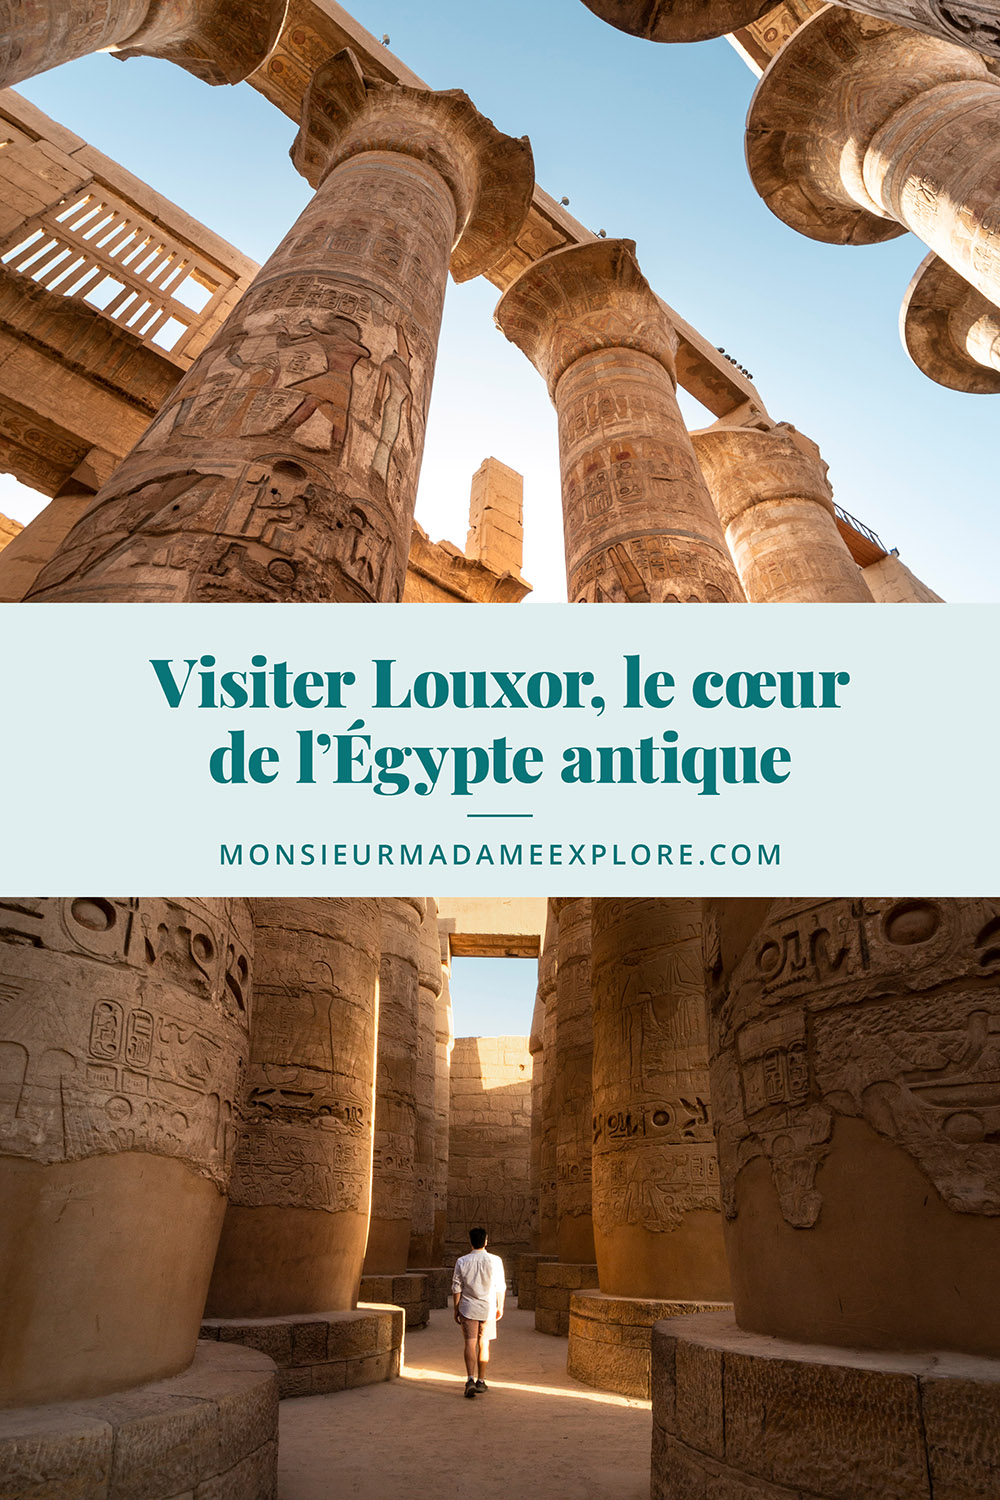 Visiter Louxor, le coeur de l'Égypte antique, Monsieur+Madame Explore, Blogue de voyage, Égypte / Visiting Luxor, Egypt